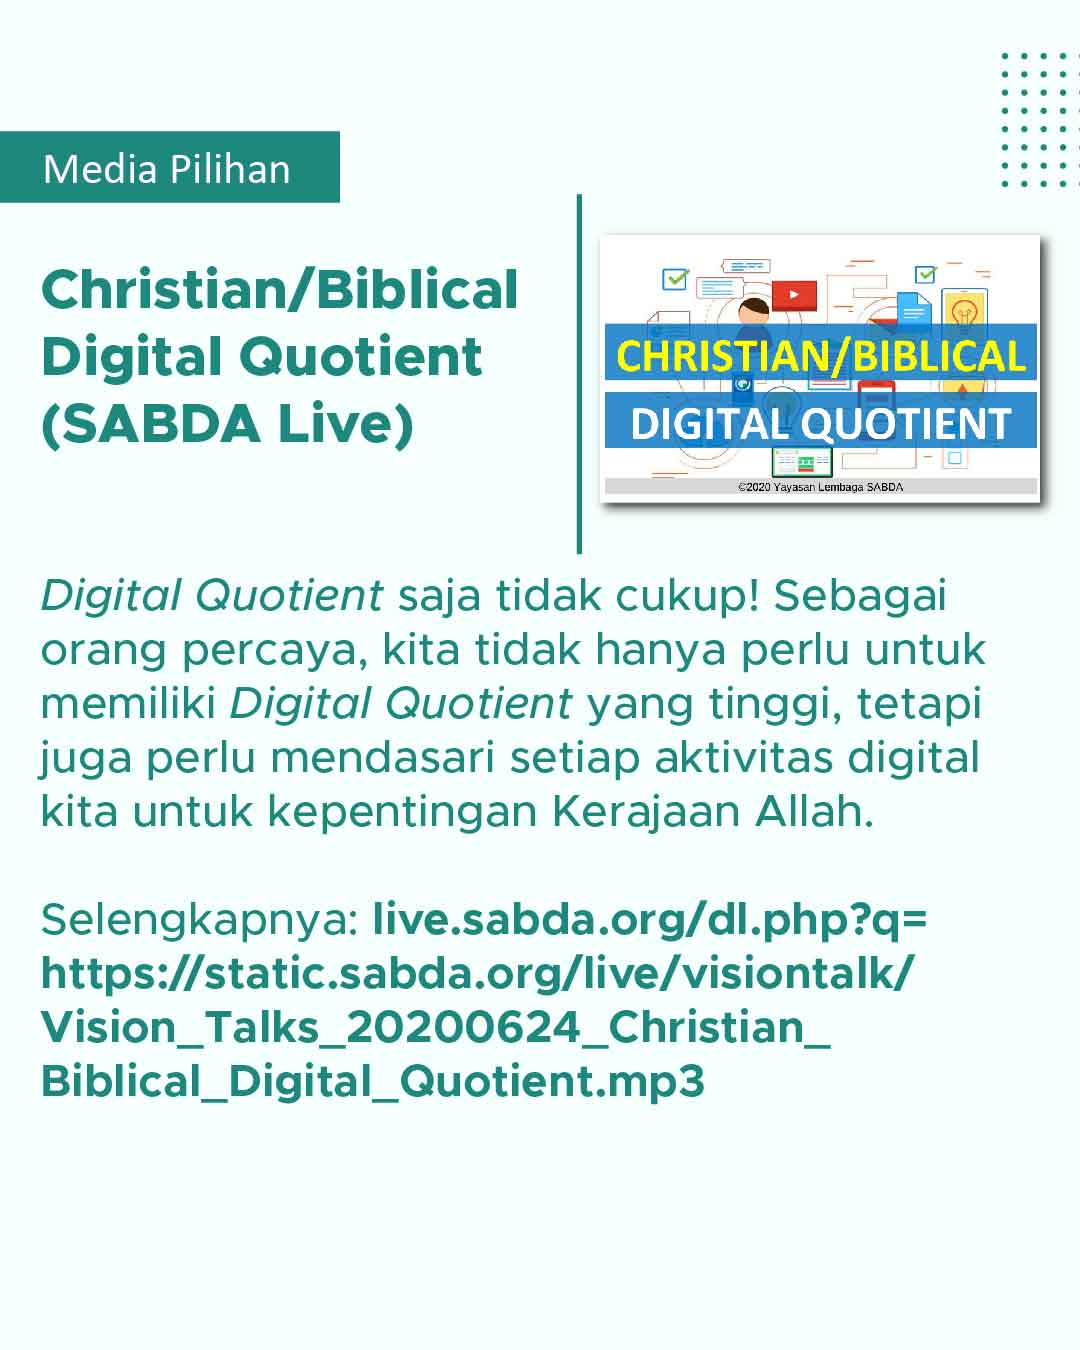 Hubungan antara Alkitab pada era digital dengan kecerdasan digital dan sebagai orang Kristen.